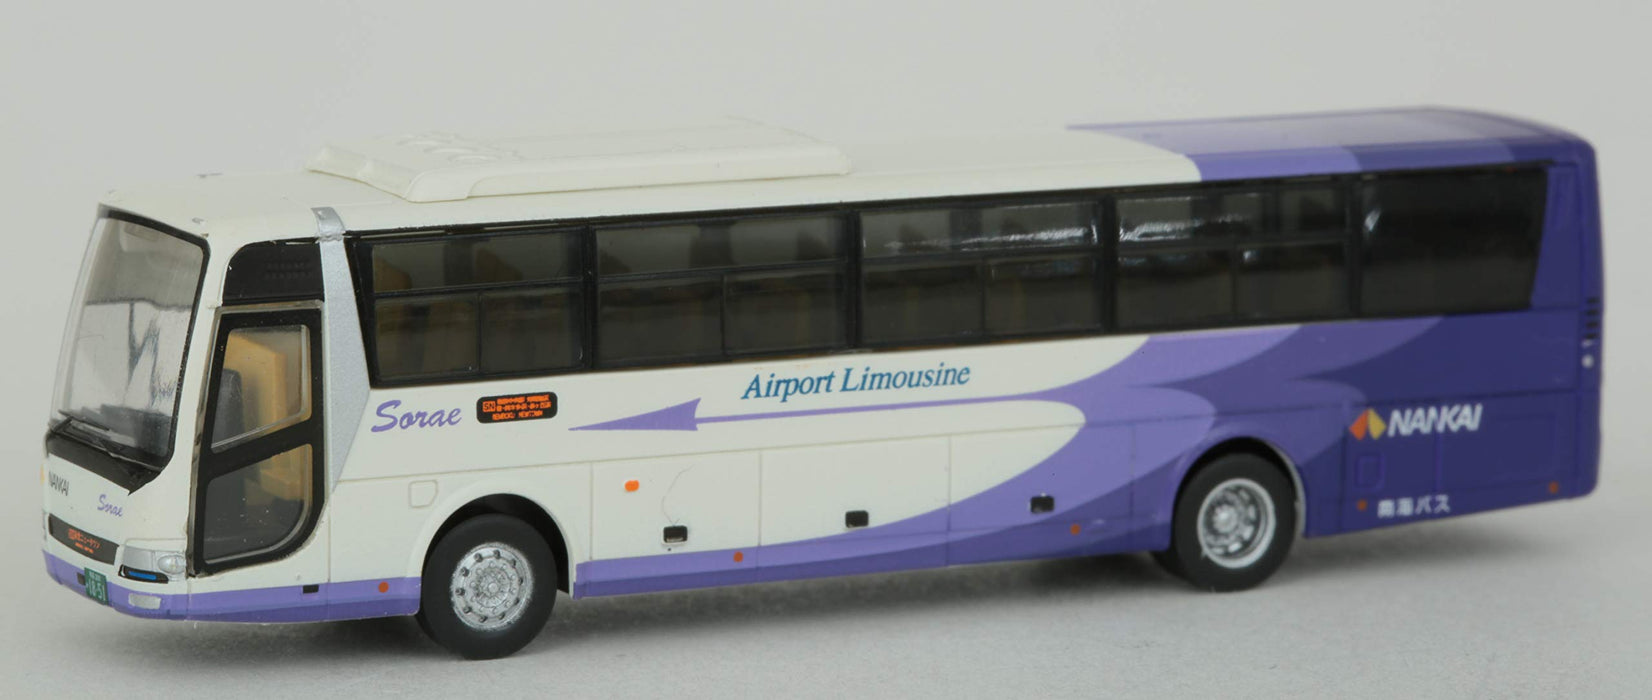 Tomytec Kansai International Airport Bus Set A - Dioramazubehör in limitierter Auflage